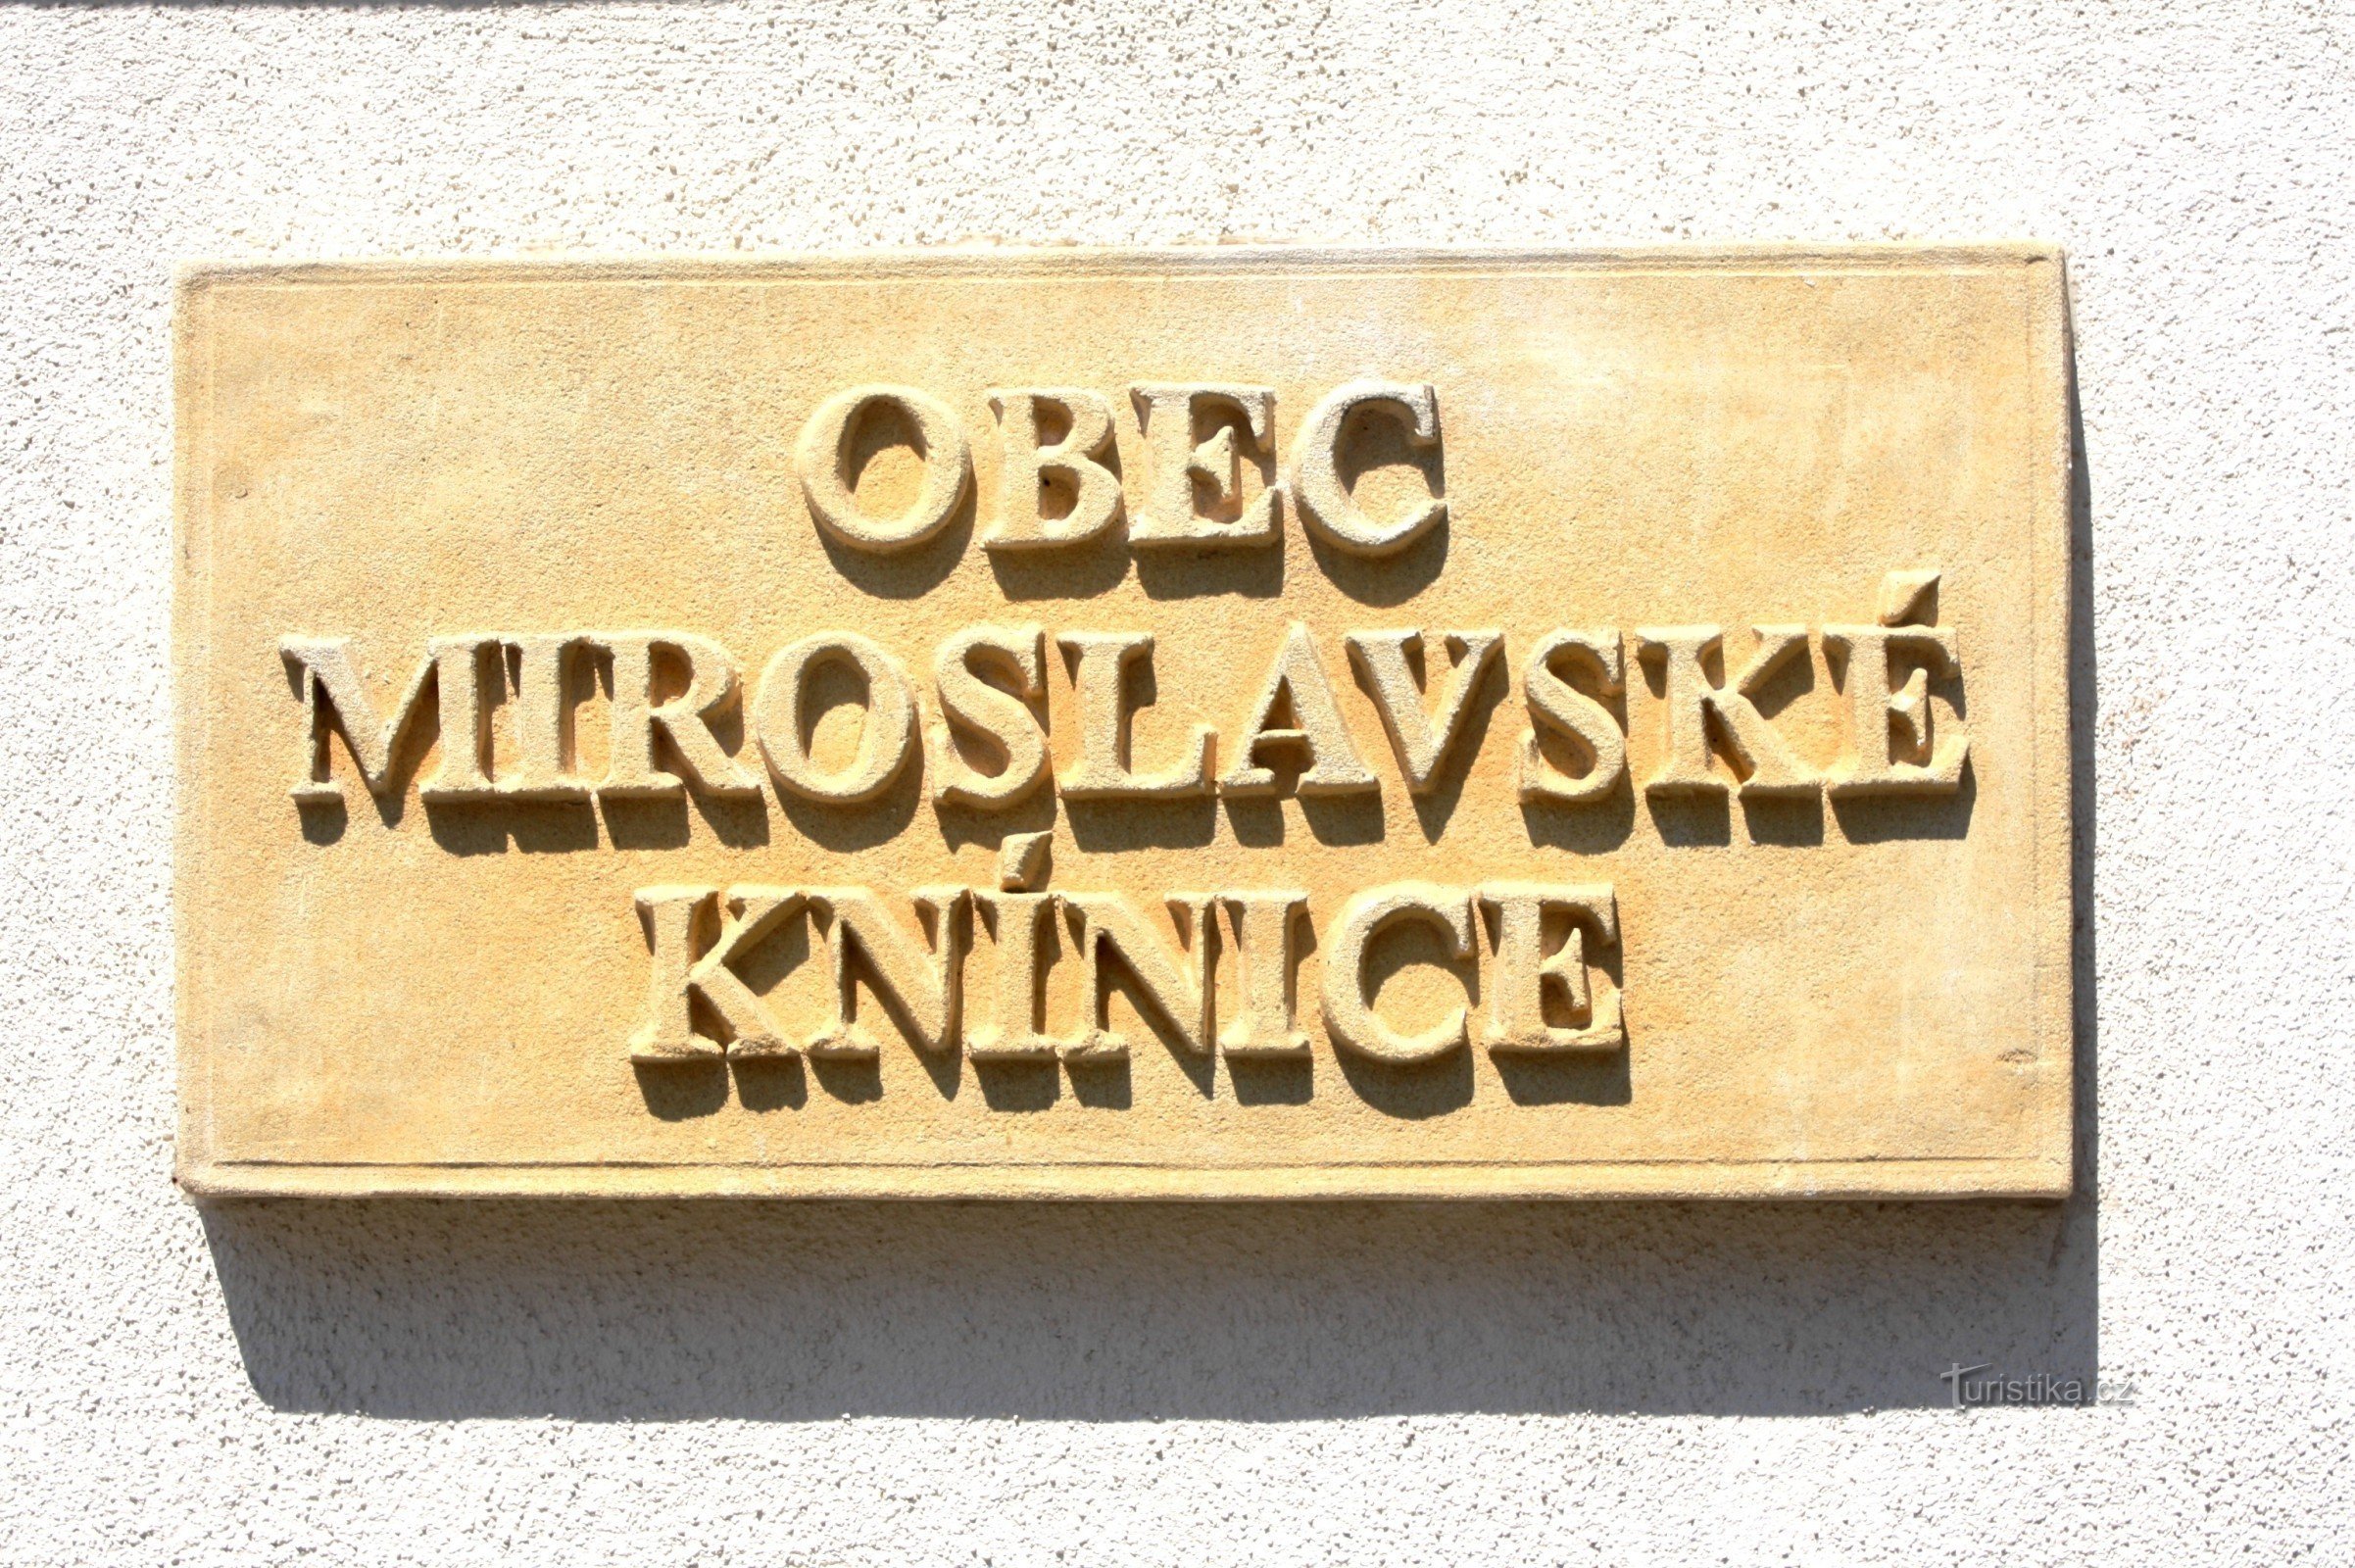 Miroslavské Knínice - wandering around the attractions of the village